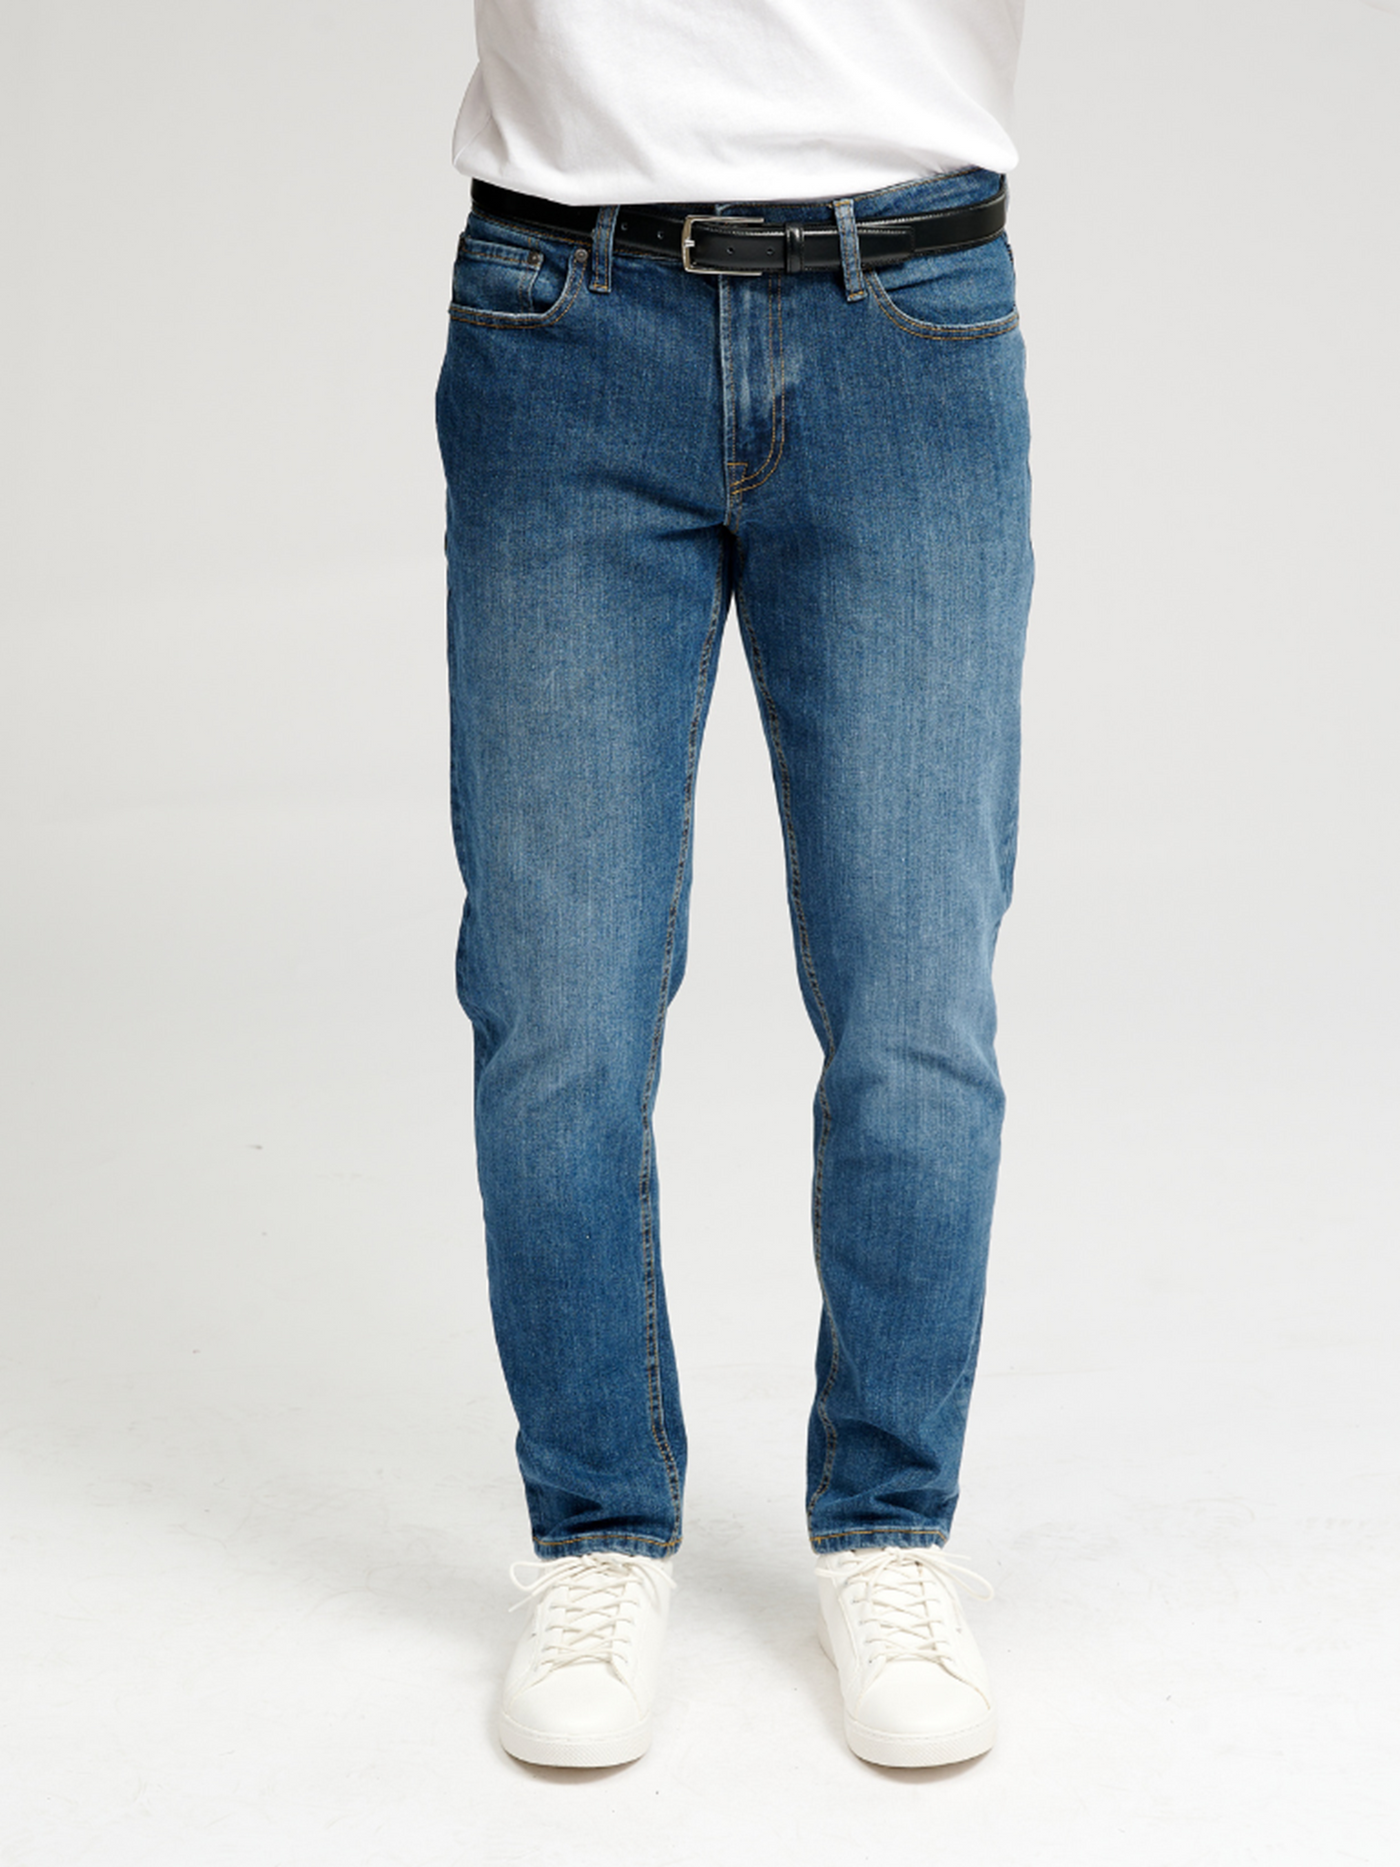 Performance Jeans (Regular) - Medium Blue Denim - TeeShoppen - Blå 4